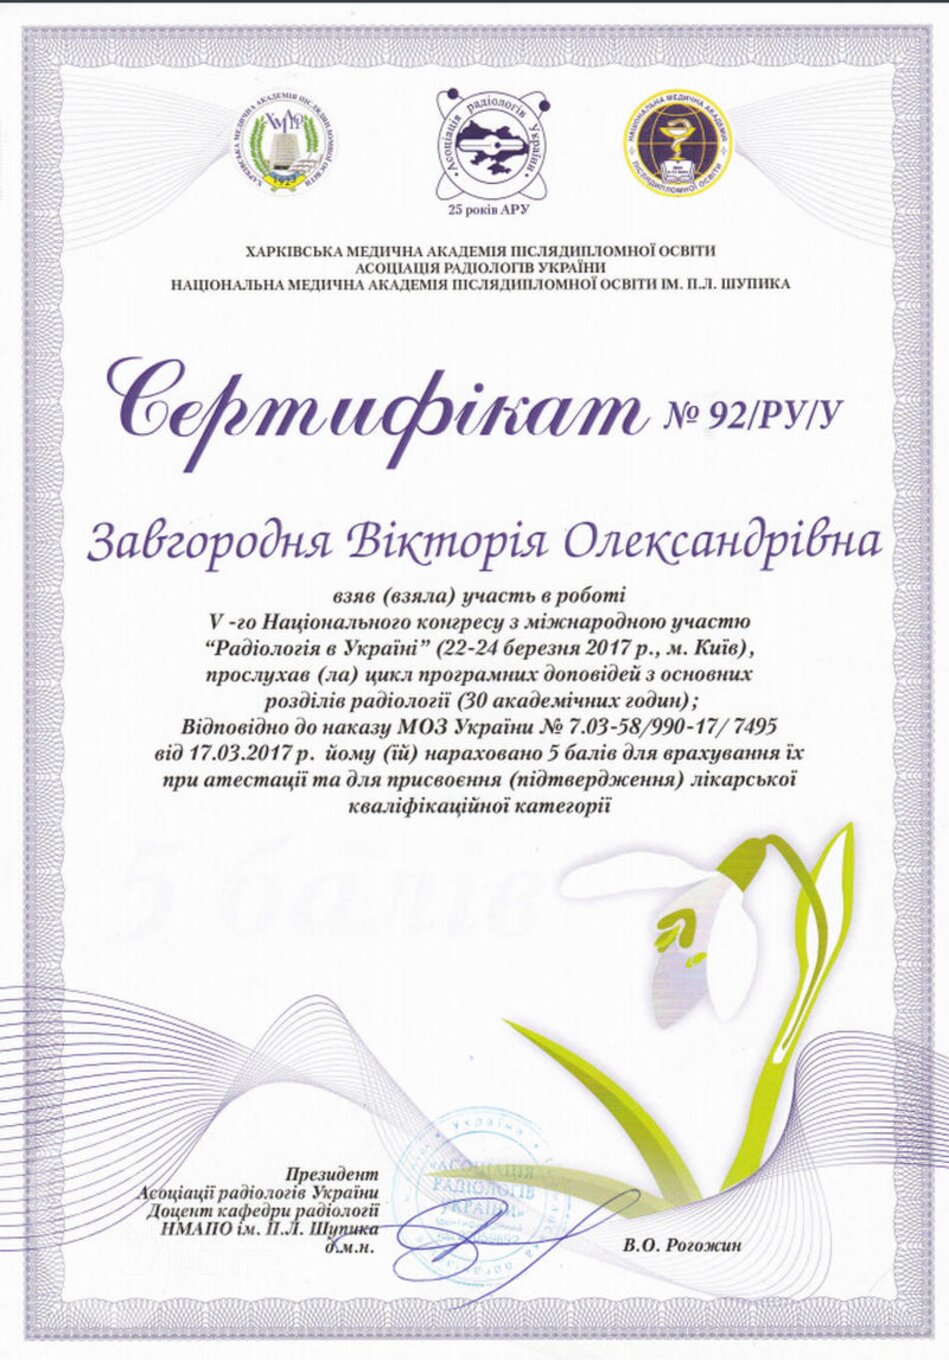 certificates/zavgorodnya-viktoriya-oleksandrivna/erc-zavgorodnyaja-certificates-07.jpg